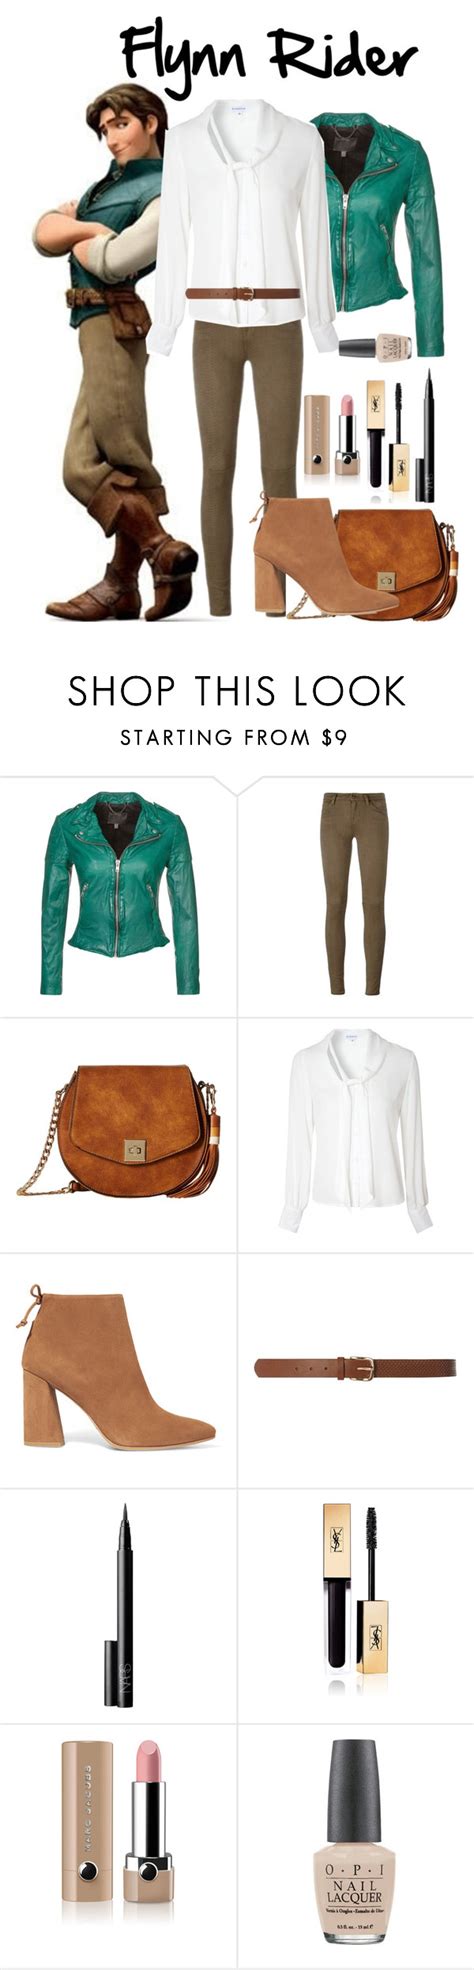 Flynn Rider Modern Clothes Design Fashion Women